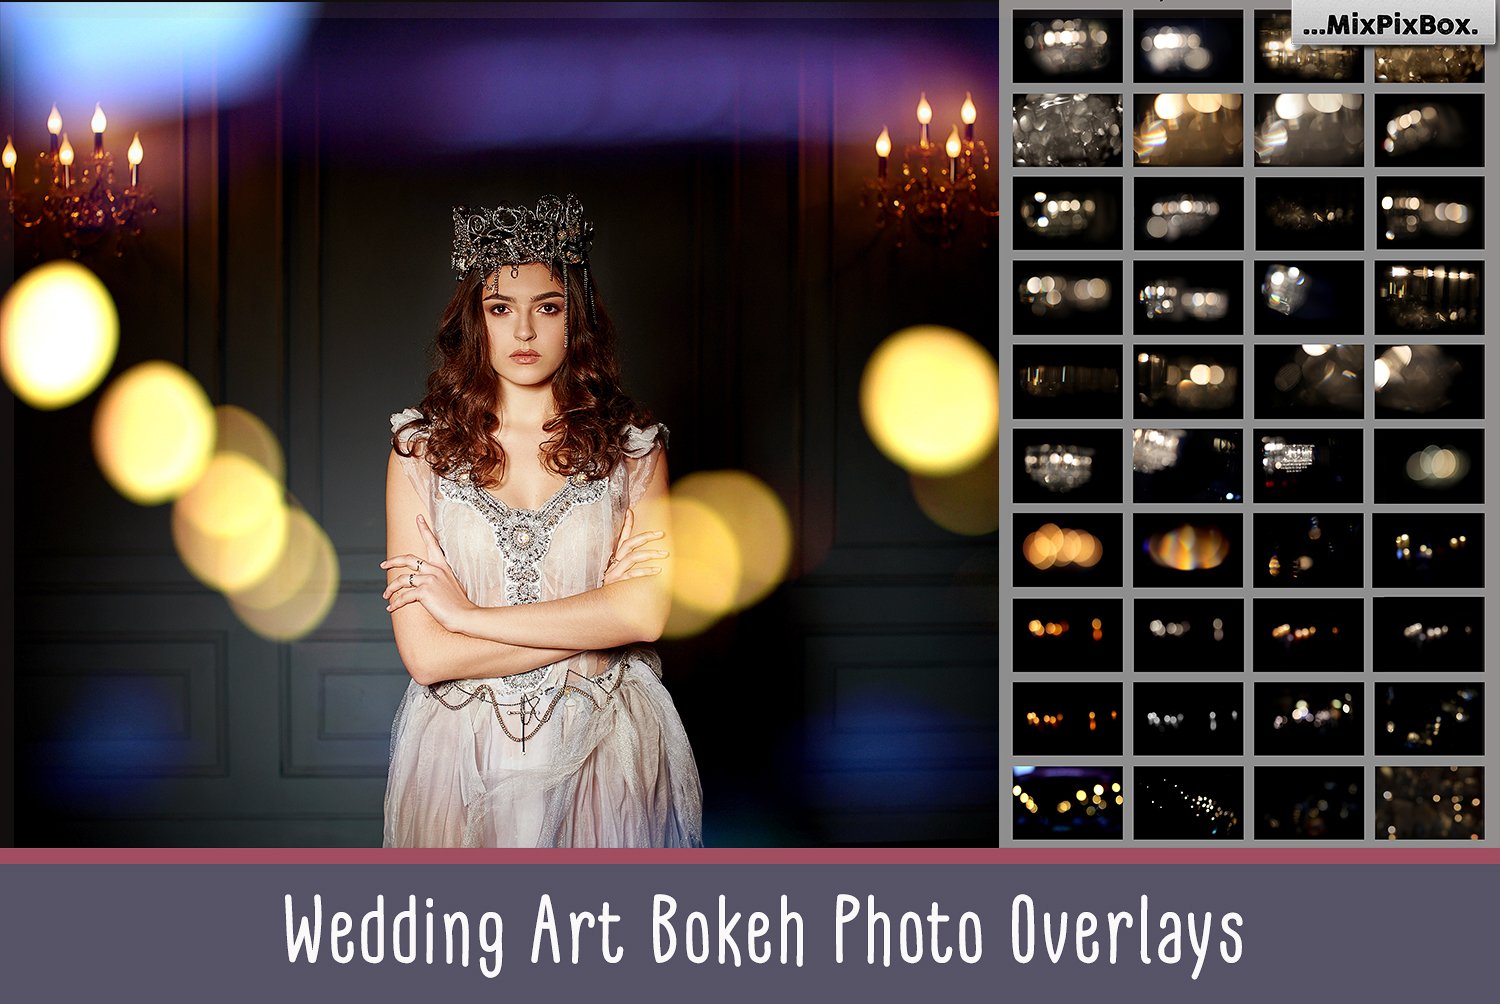 Wedding Art Bokeh Photo Overlayscover image.